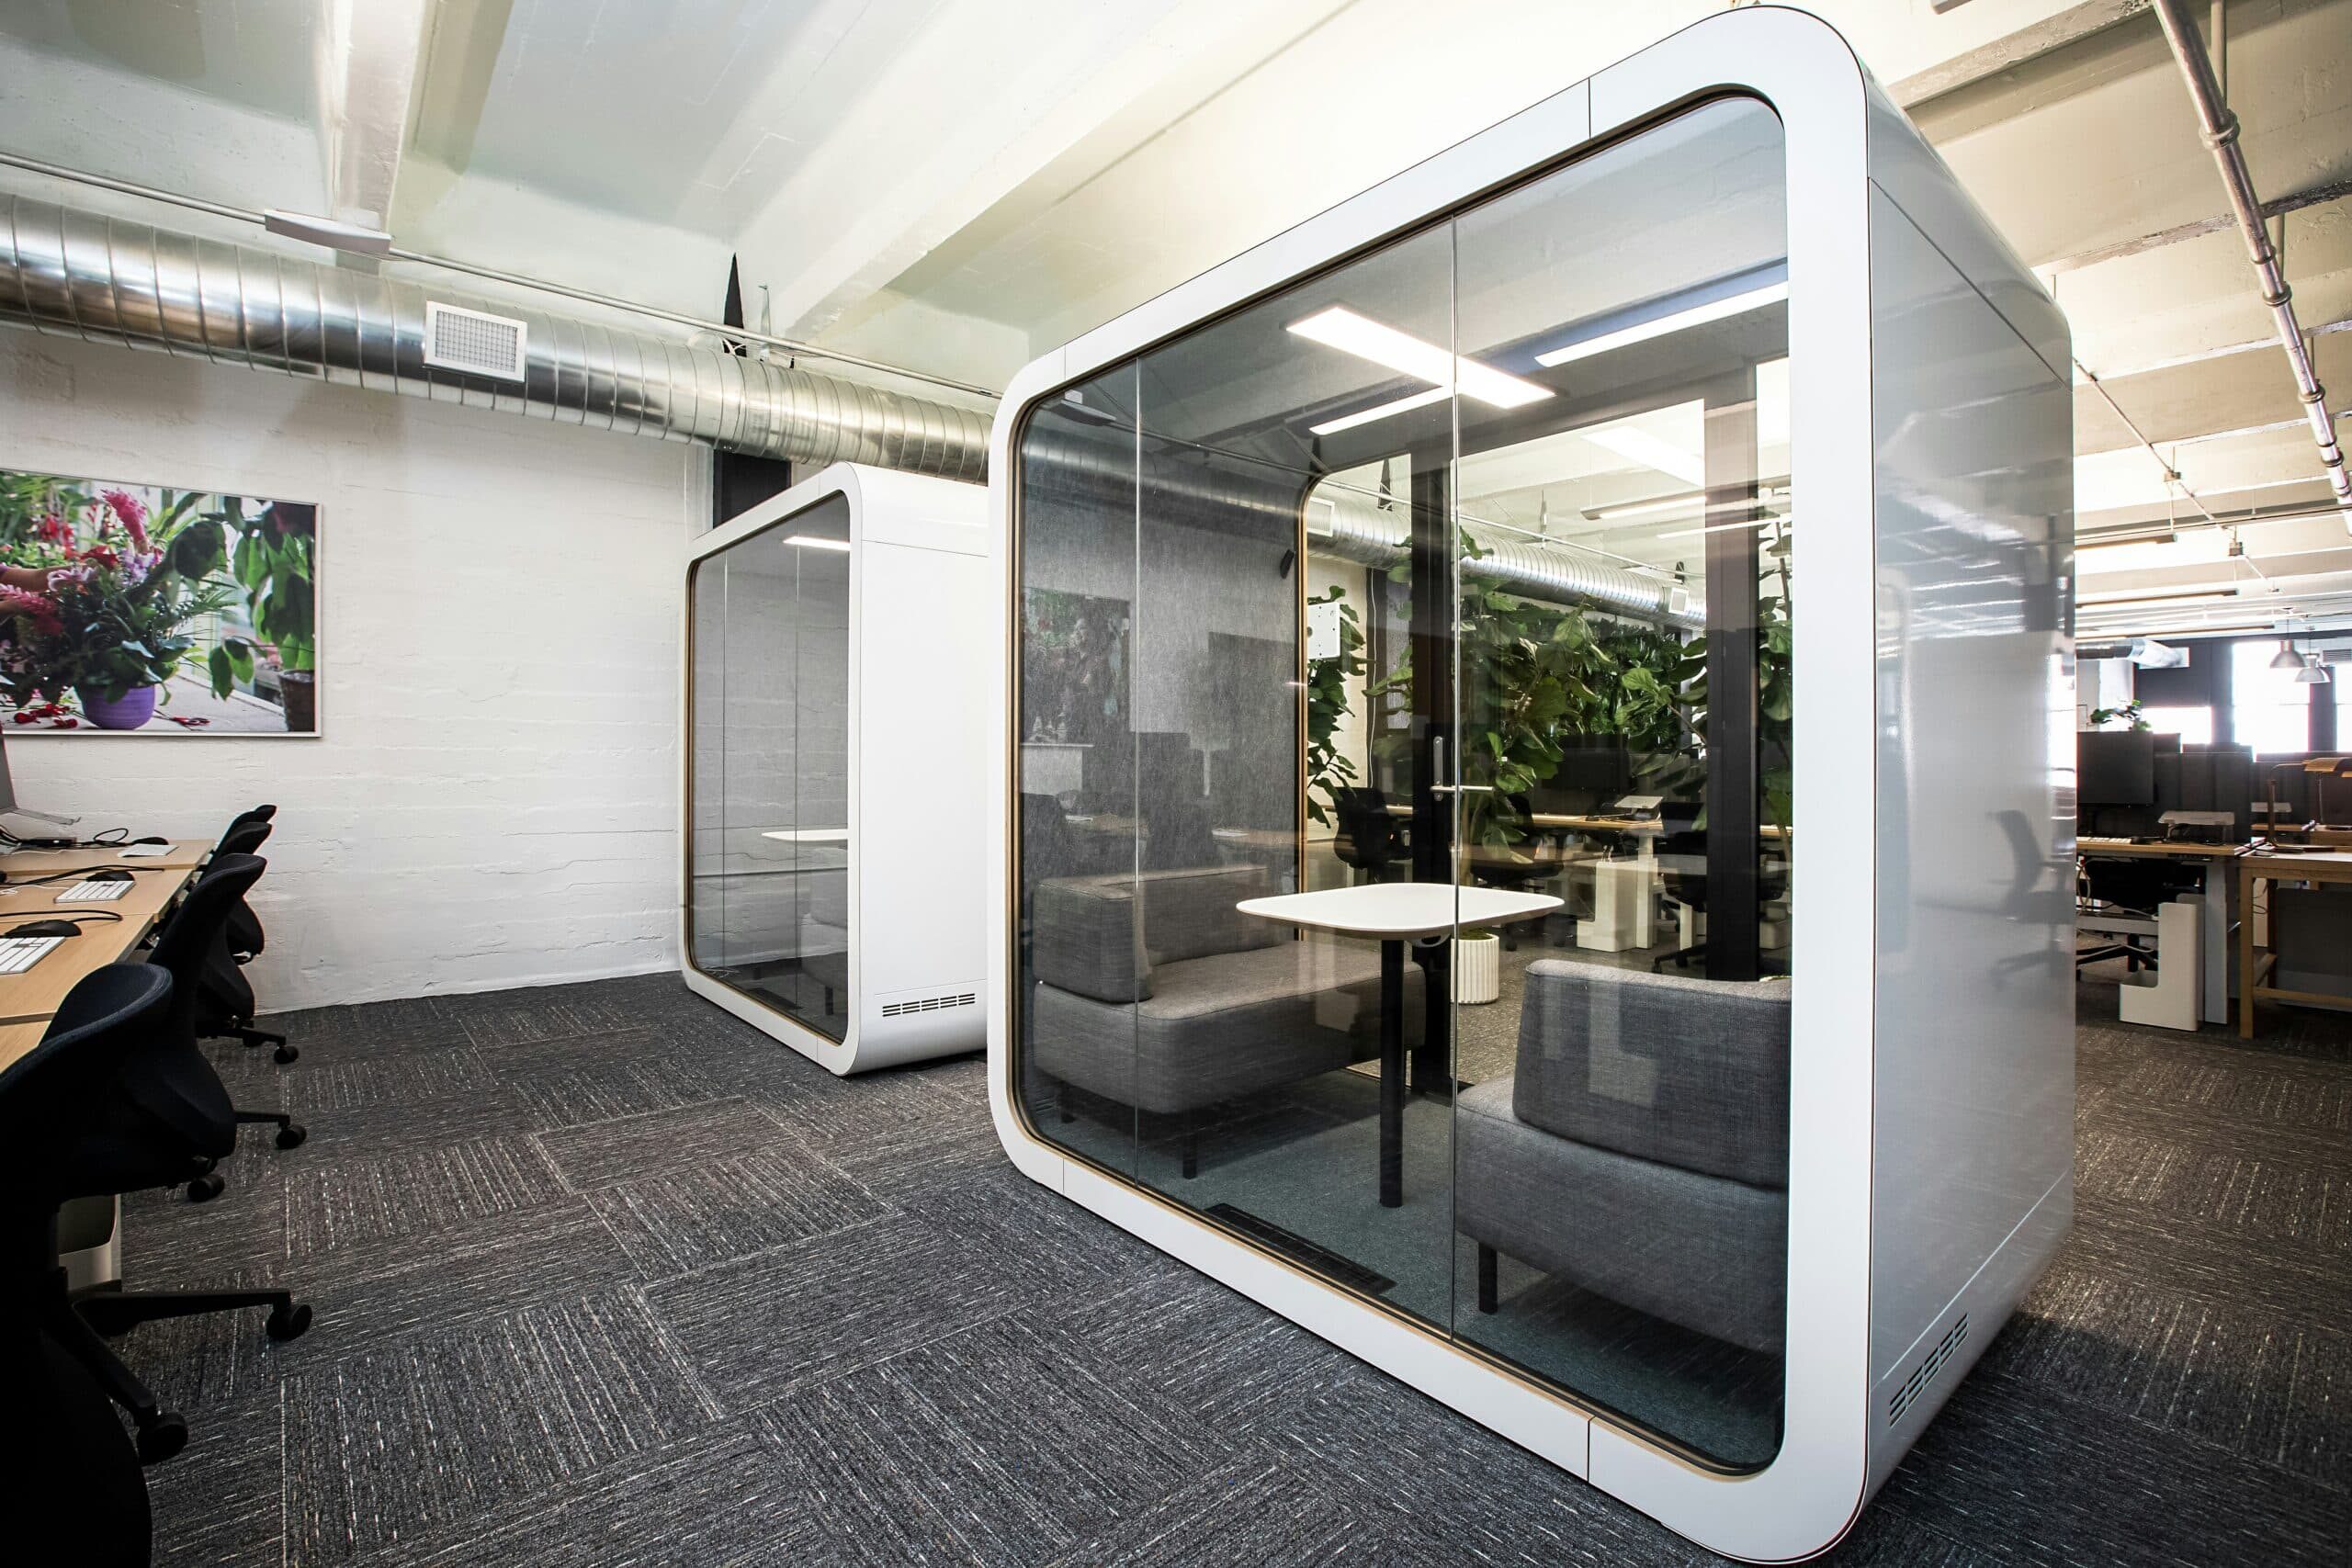 découvrez notre sélection de mobilier de bureau de haute qualité pour aménager votre espace de travail avec style et fonctionnalité.